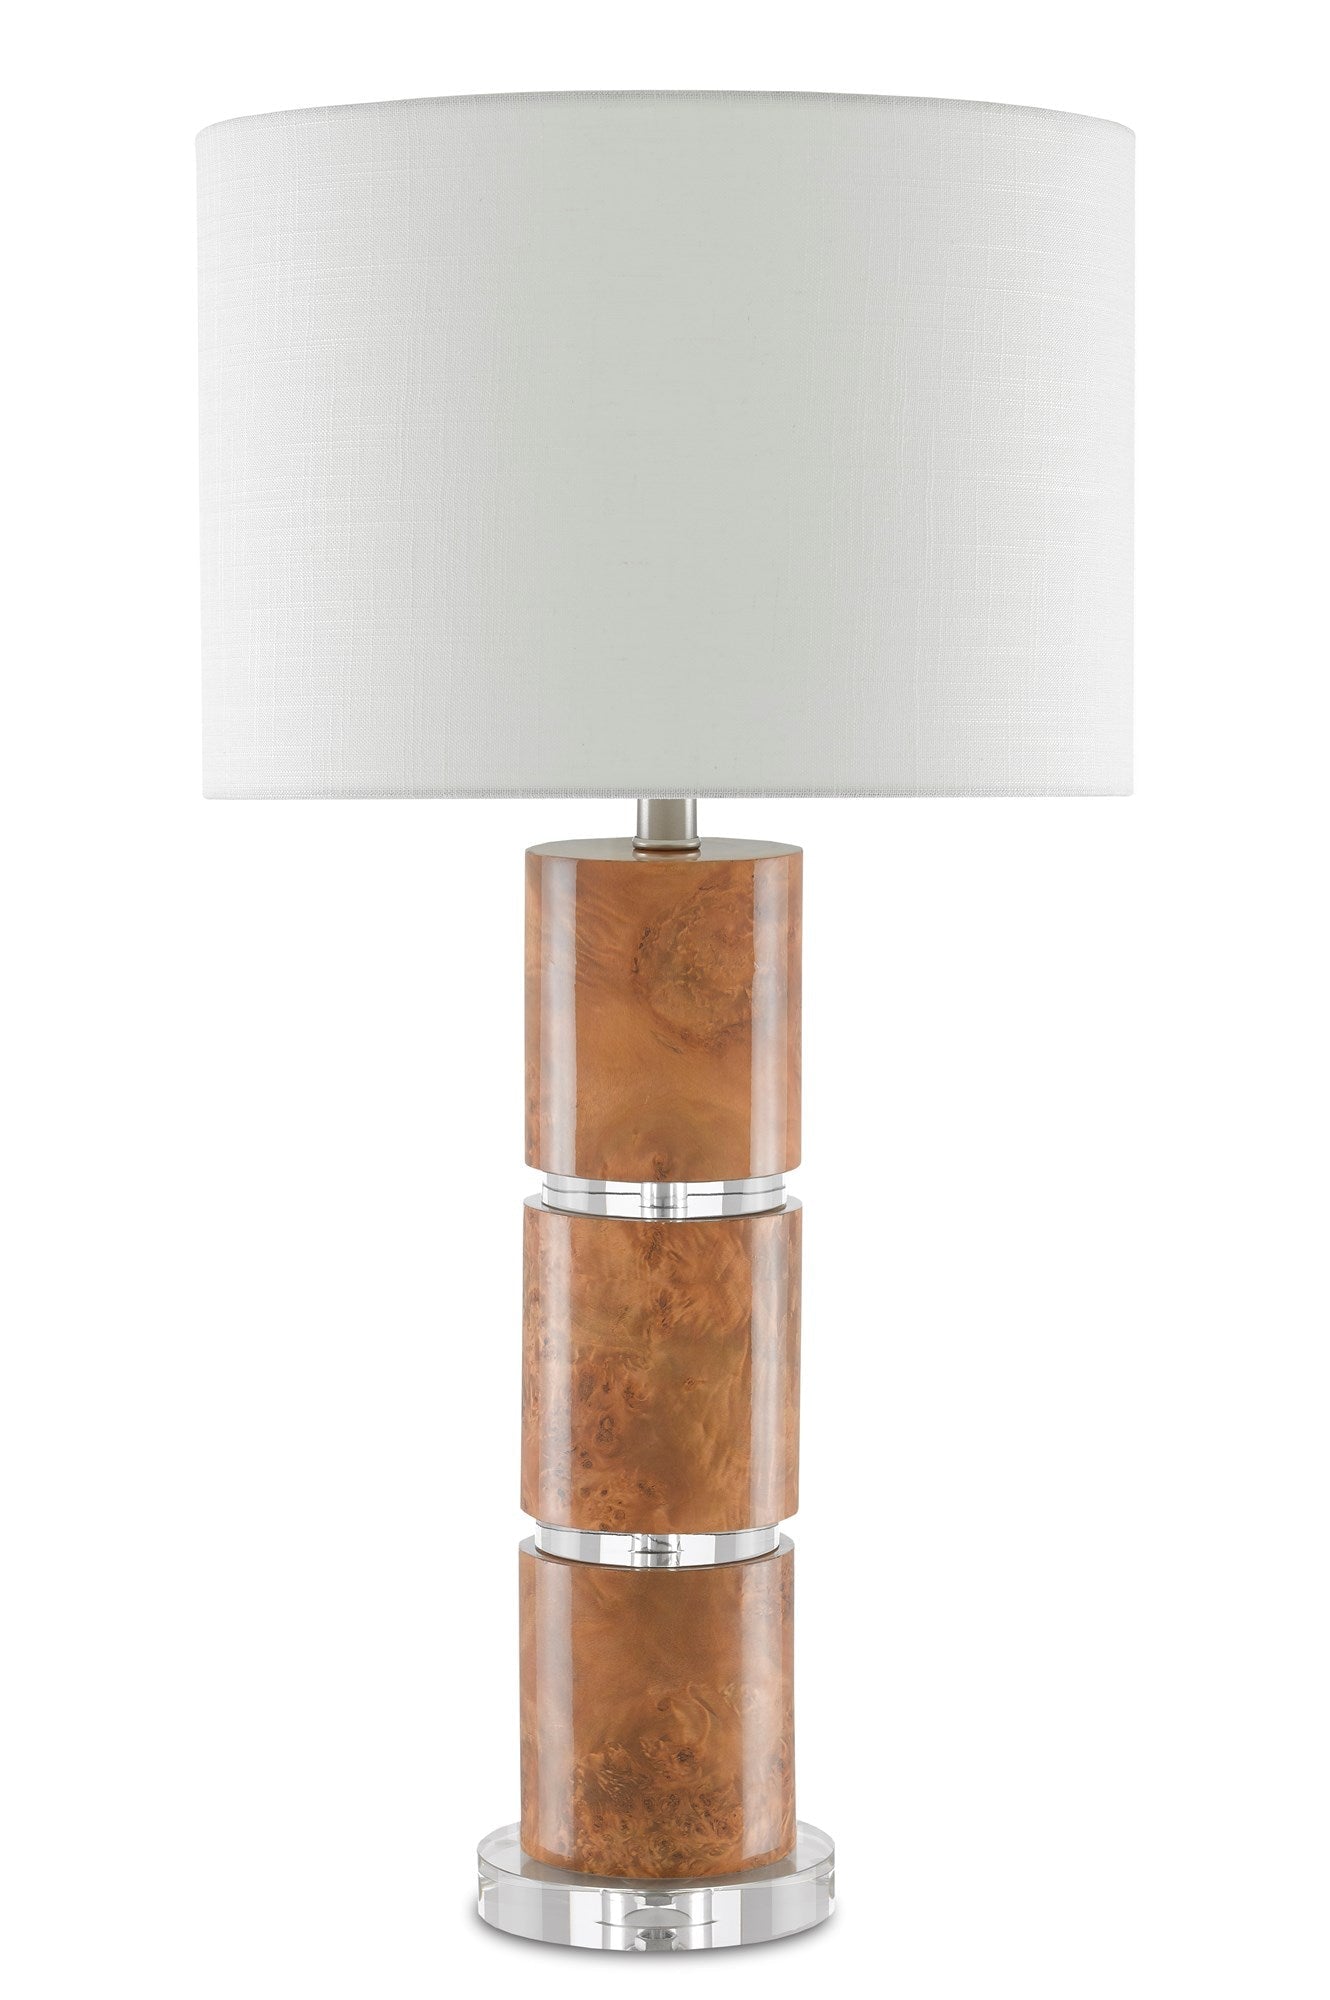 Birdseye Table Lamp - Decor - Tipplergoods